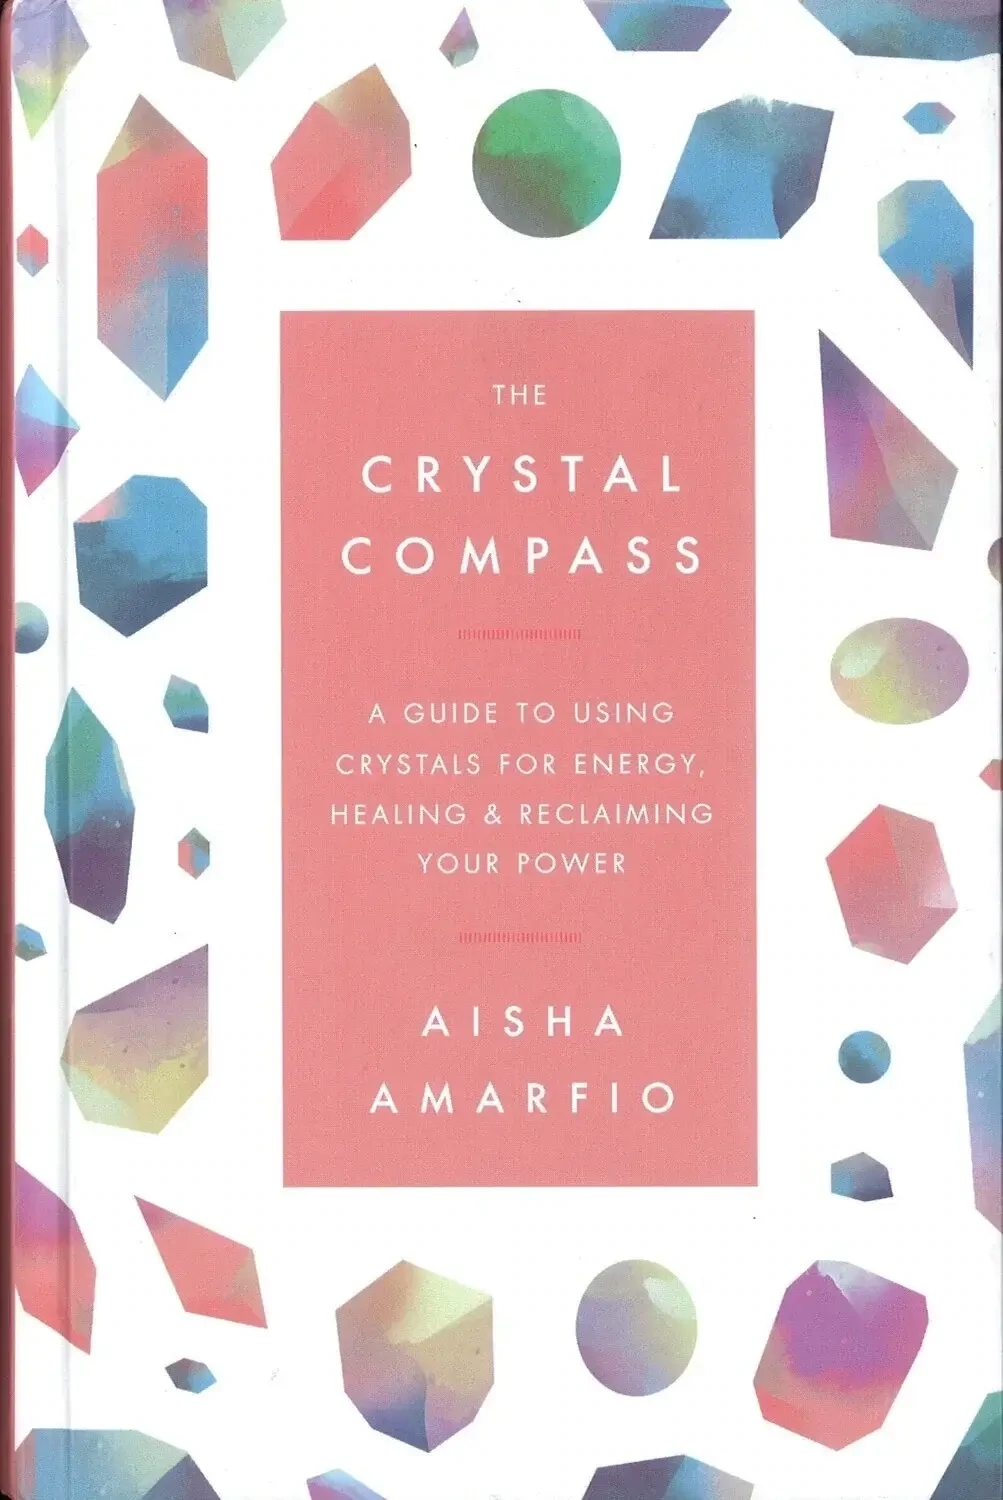 The Crystal Compass by Aisha Amarfio